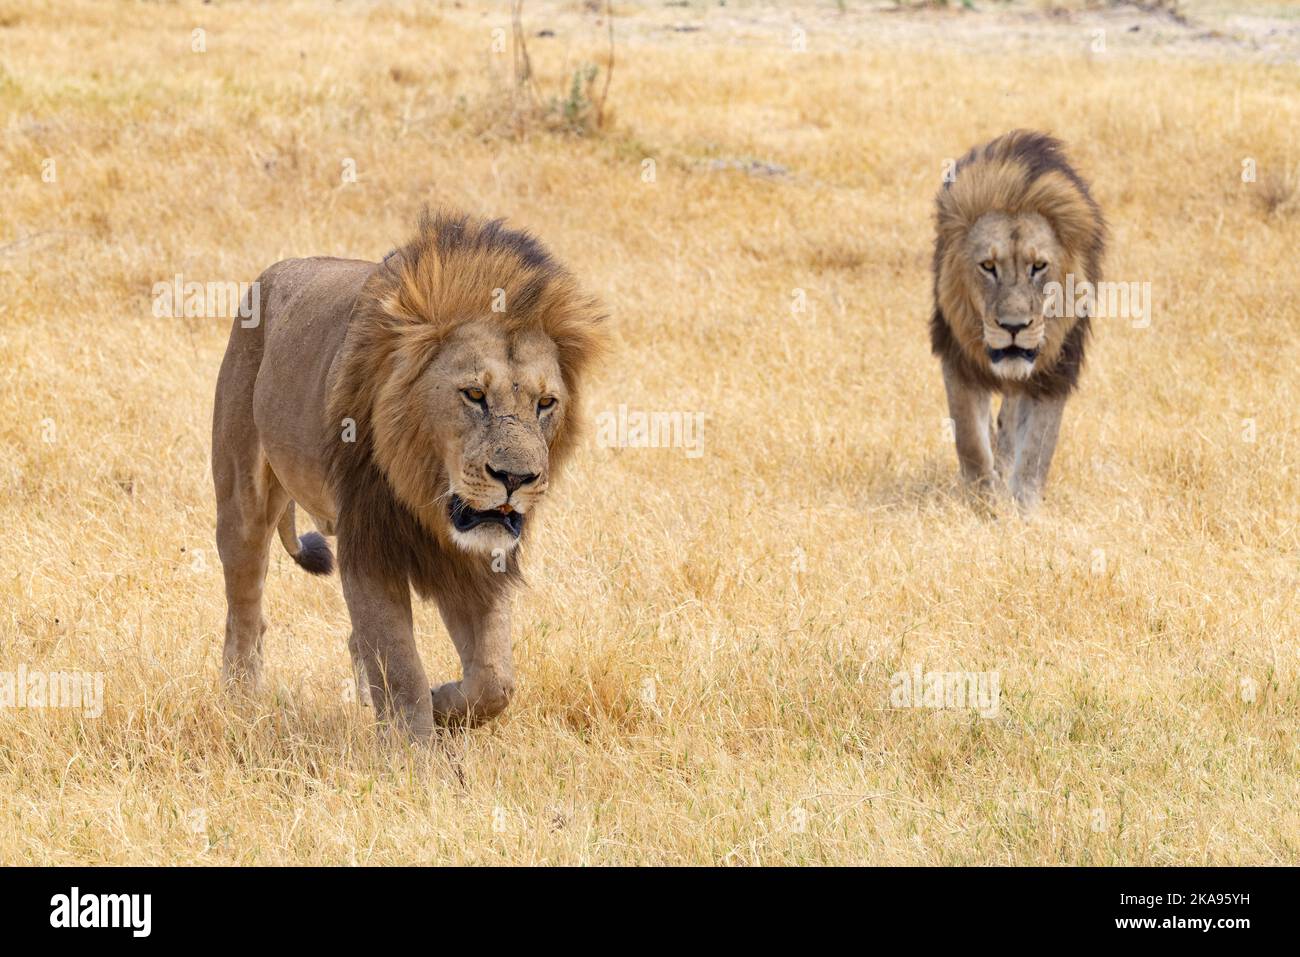 Lions Afrique; deux magnifiques Lions mâles adultes, Panthera leo, marchant dans l'herbe; Moremi Game Reserve, Okavango Delta Botswana Africa. Animaux africains. Banque D'Images